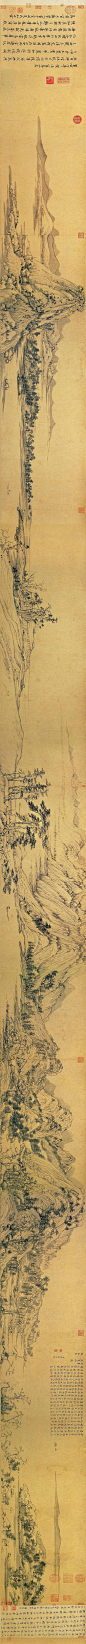 元黄公望《富春山居图》长卷 纸本、水墨画，纵33厘米、横639．9厘米，现藏台北故宫博物院。 卷首残存一小段(纵31．8厘米，横51．4厘米)，后人称为《剩山图》，仍保存在黄公望的家乡浙江省博物馆。